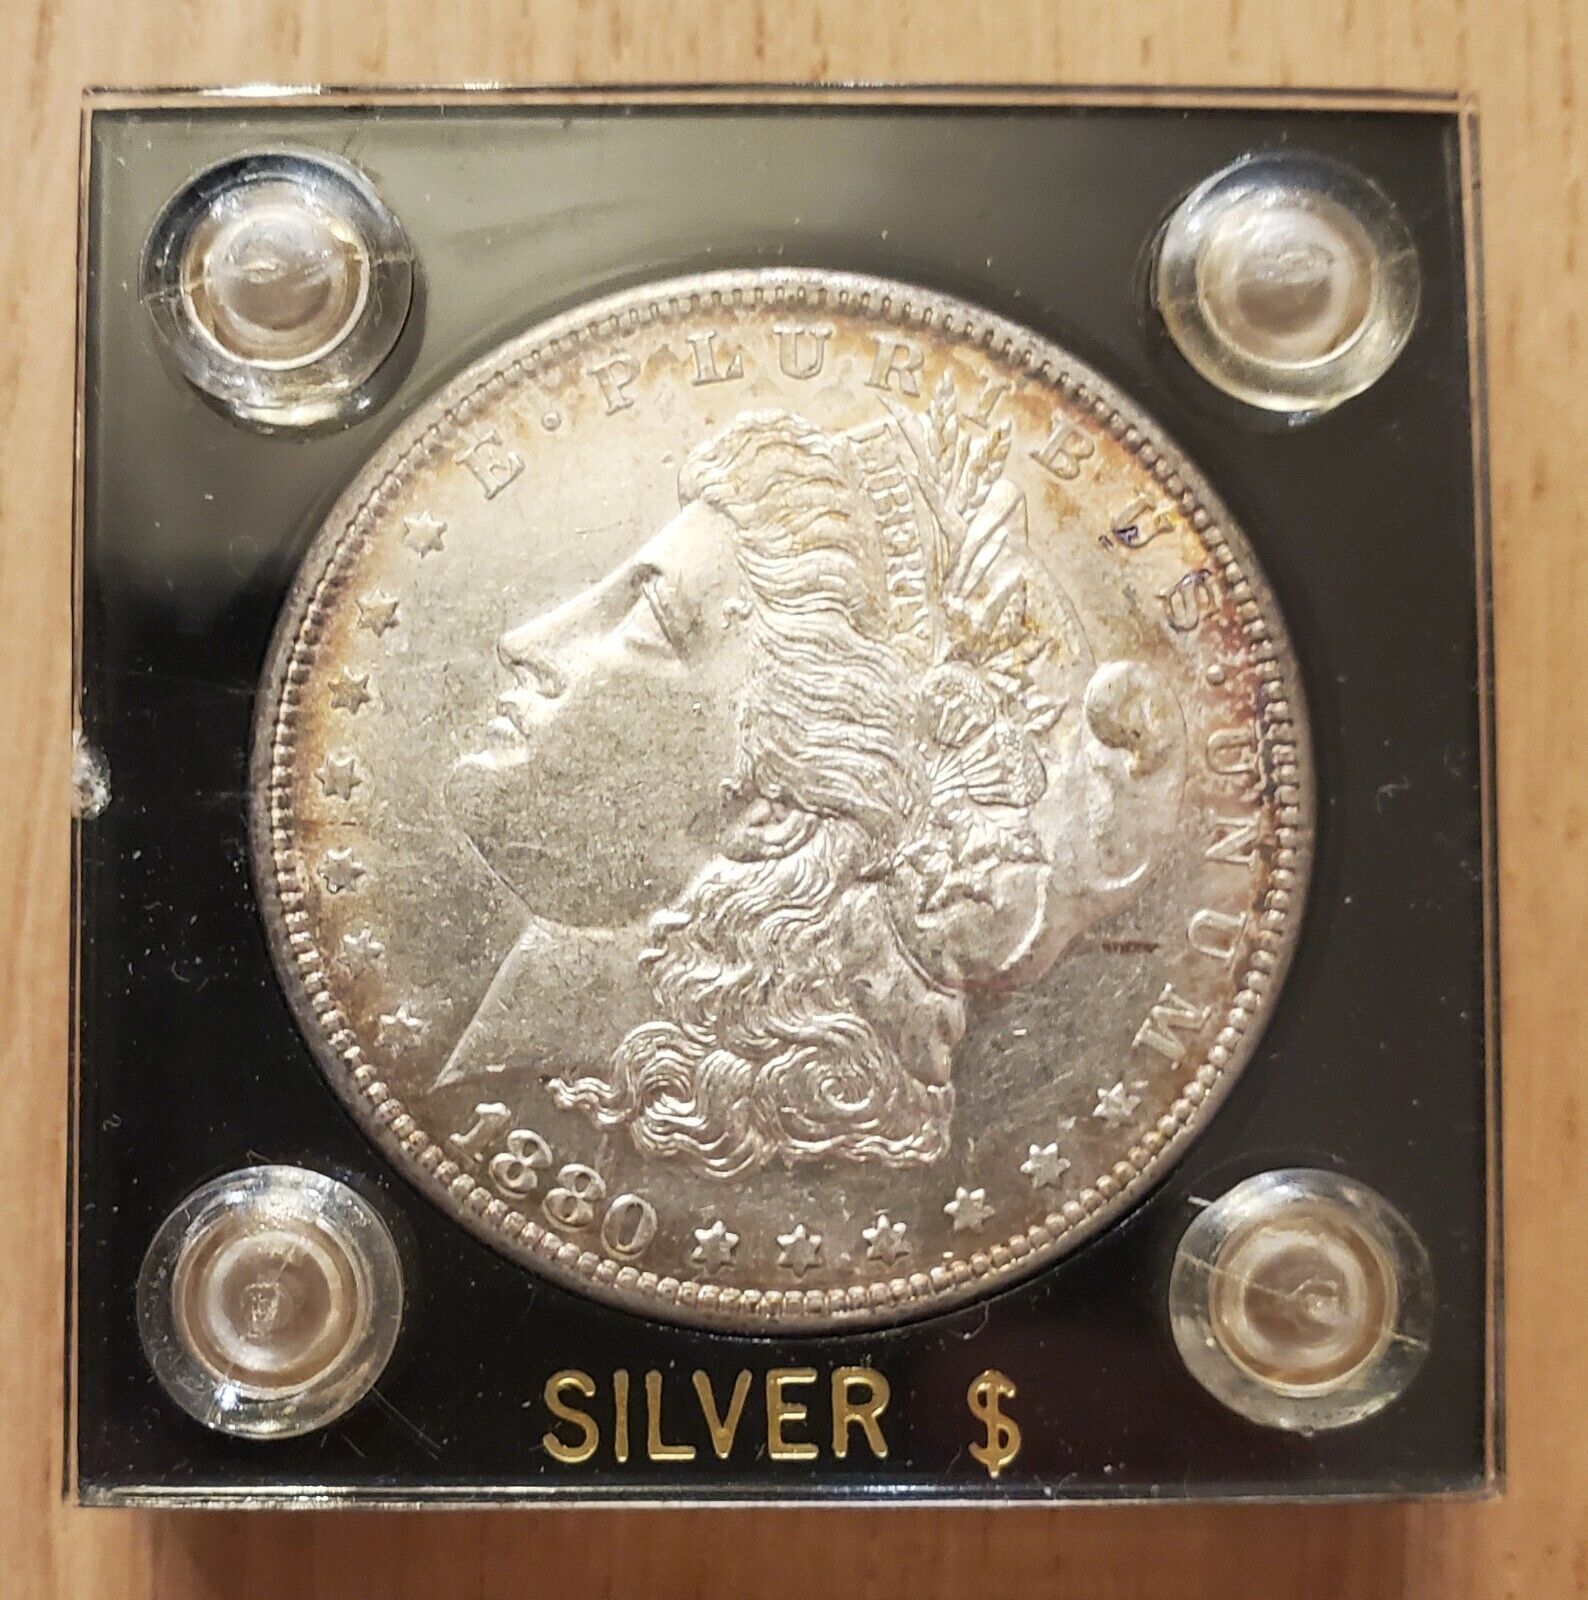 1880 S Morgan Silver Dollar Liberty Head Coin - 90% Silver - Includes Case